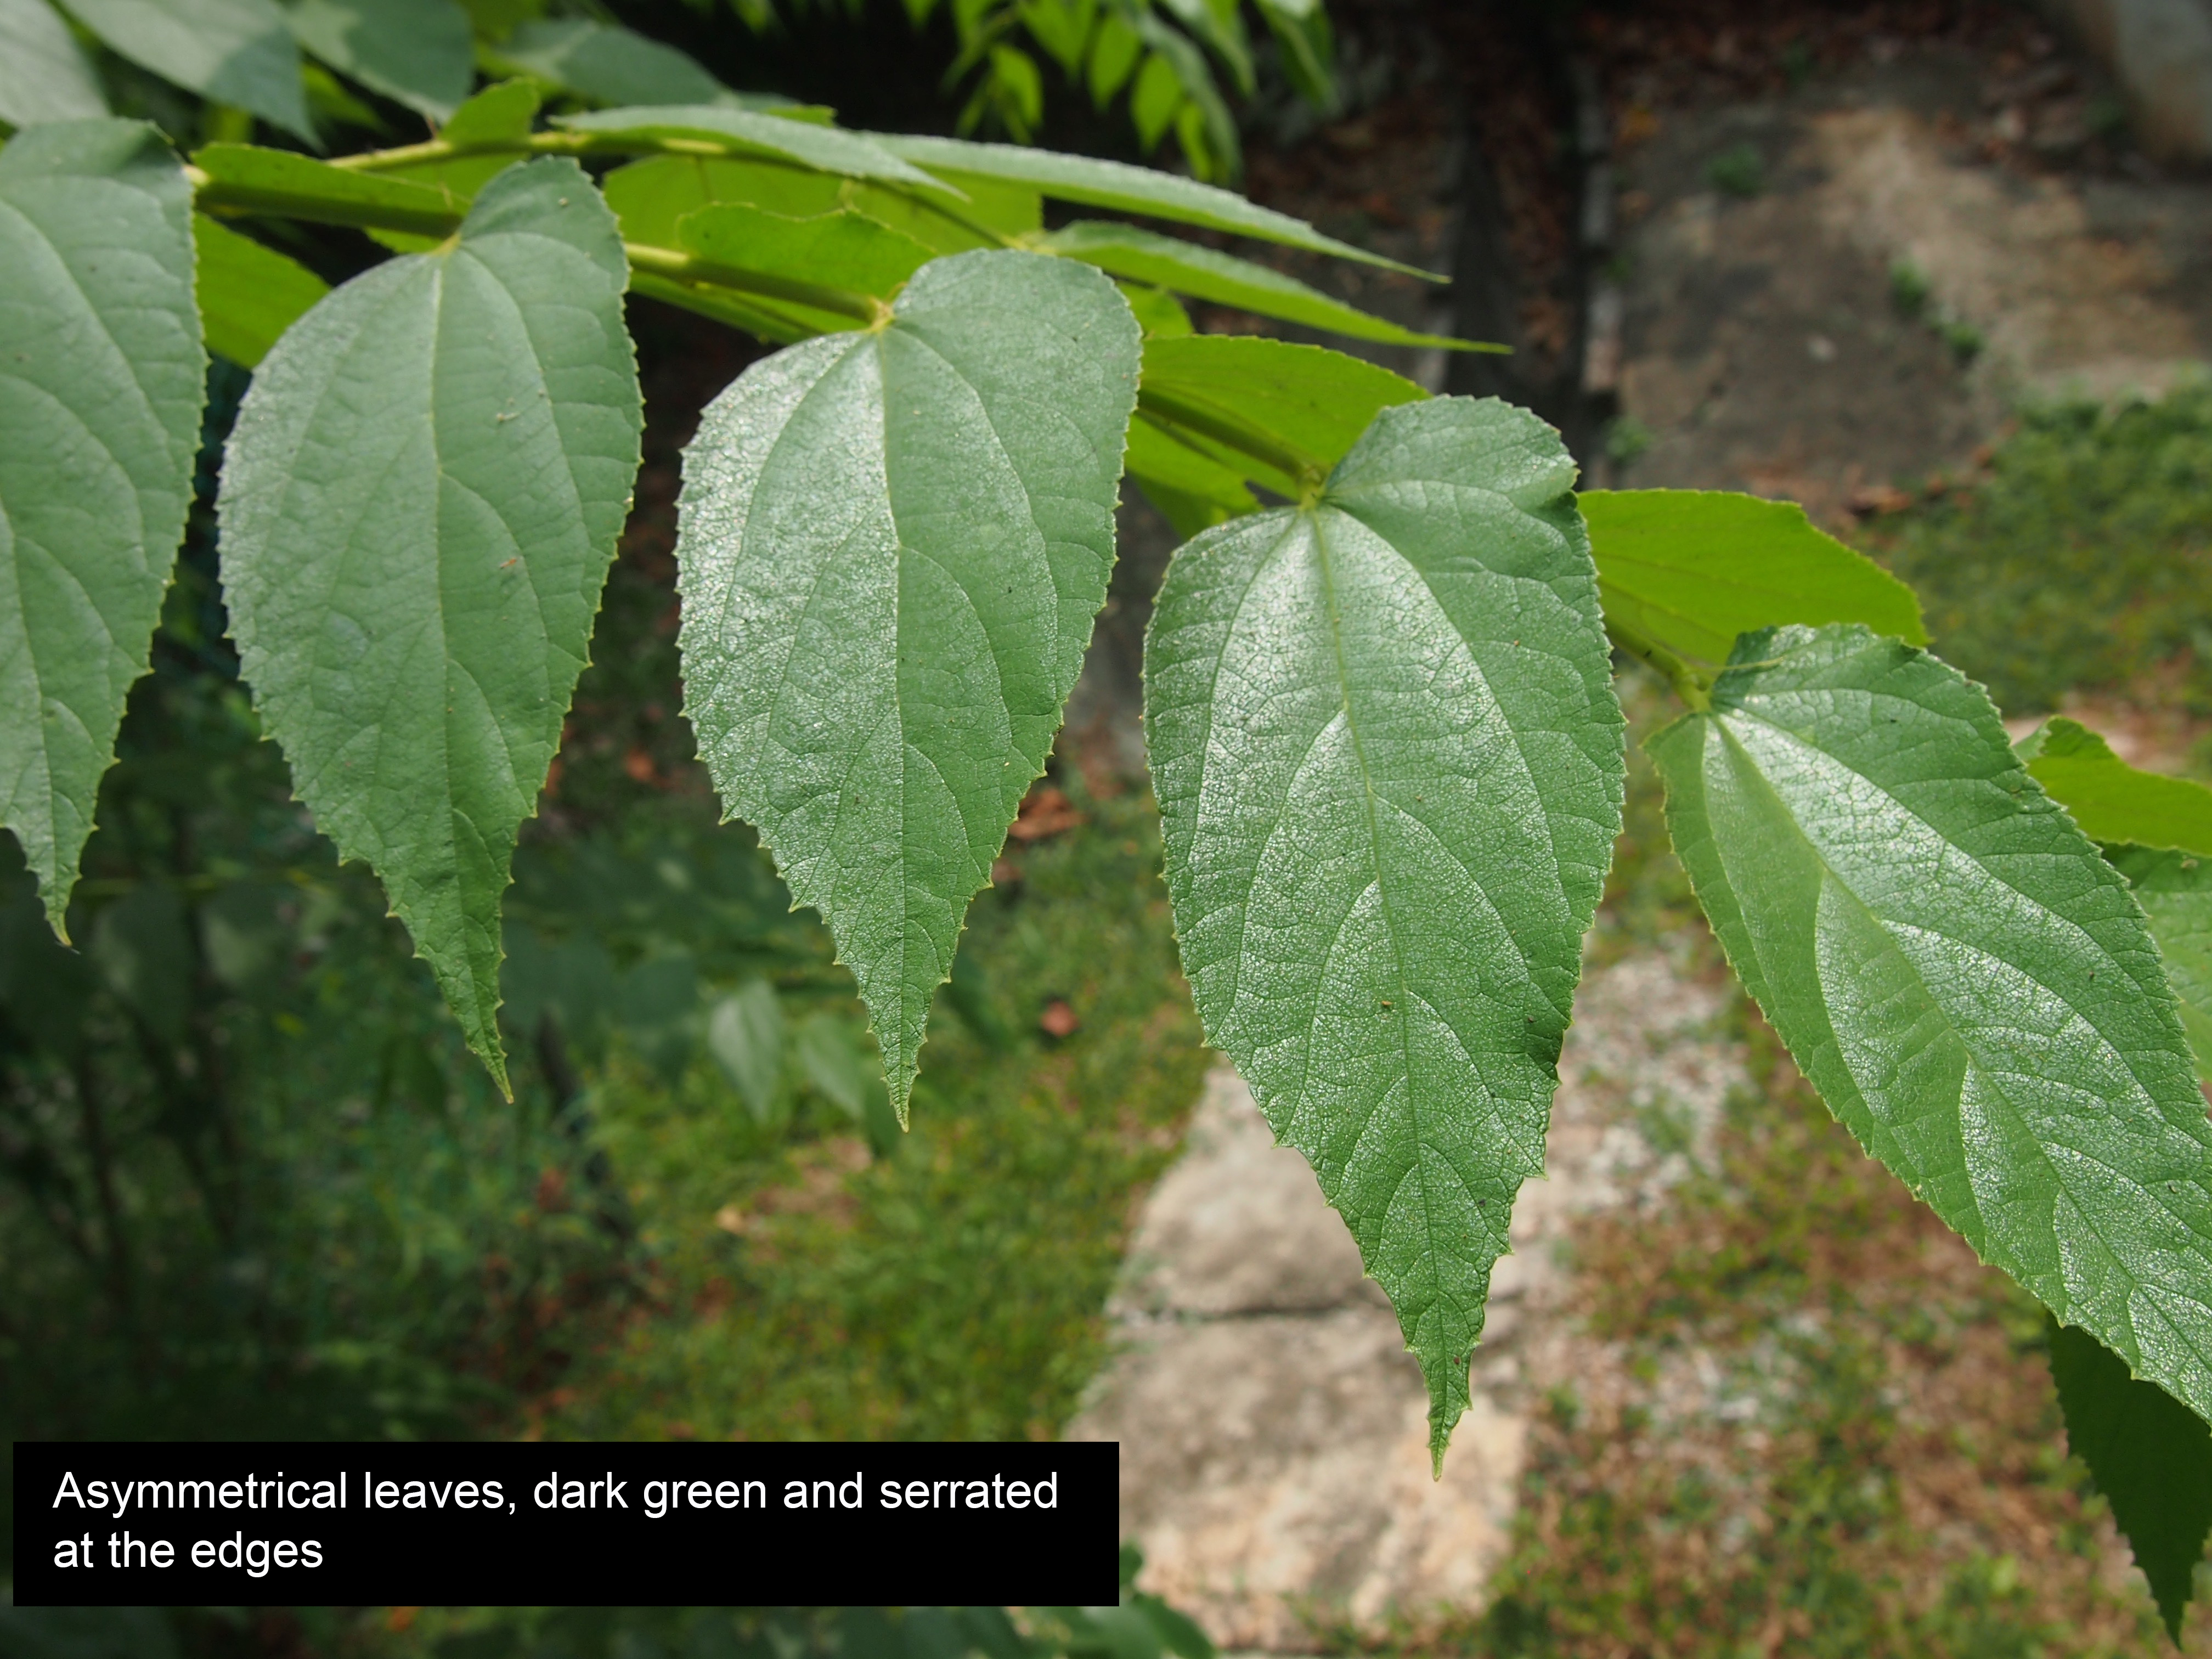 leaf1.jpg